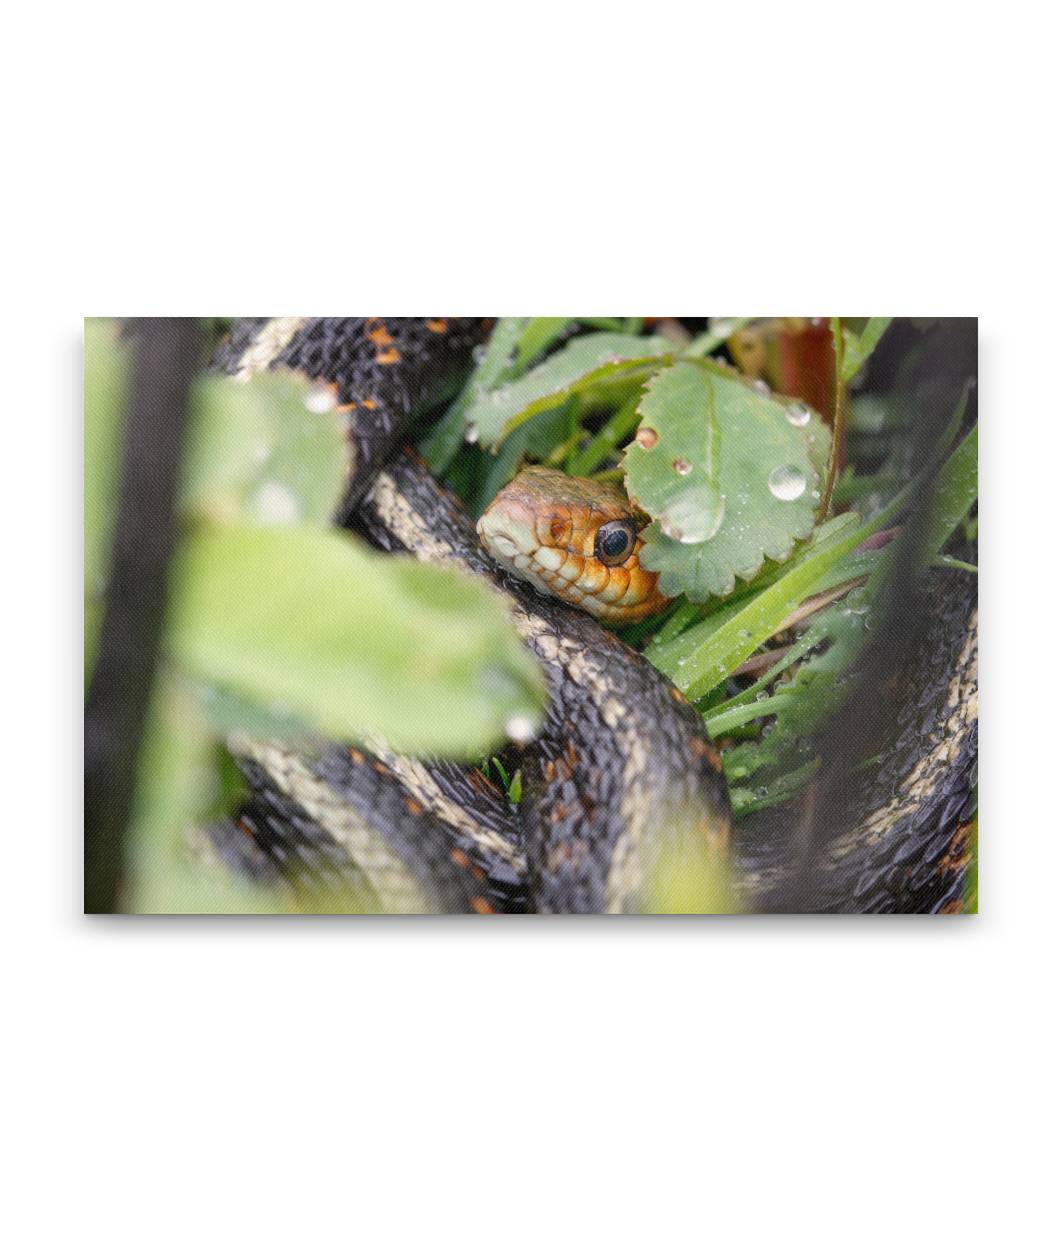 Garter Snake, William L. Finley National Wildlife Refuge, Oregon, USA